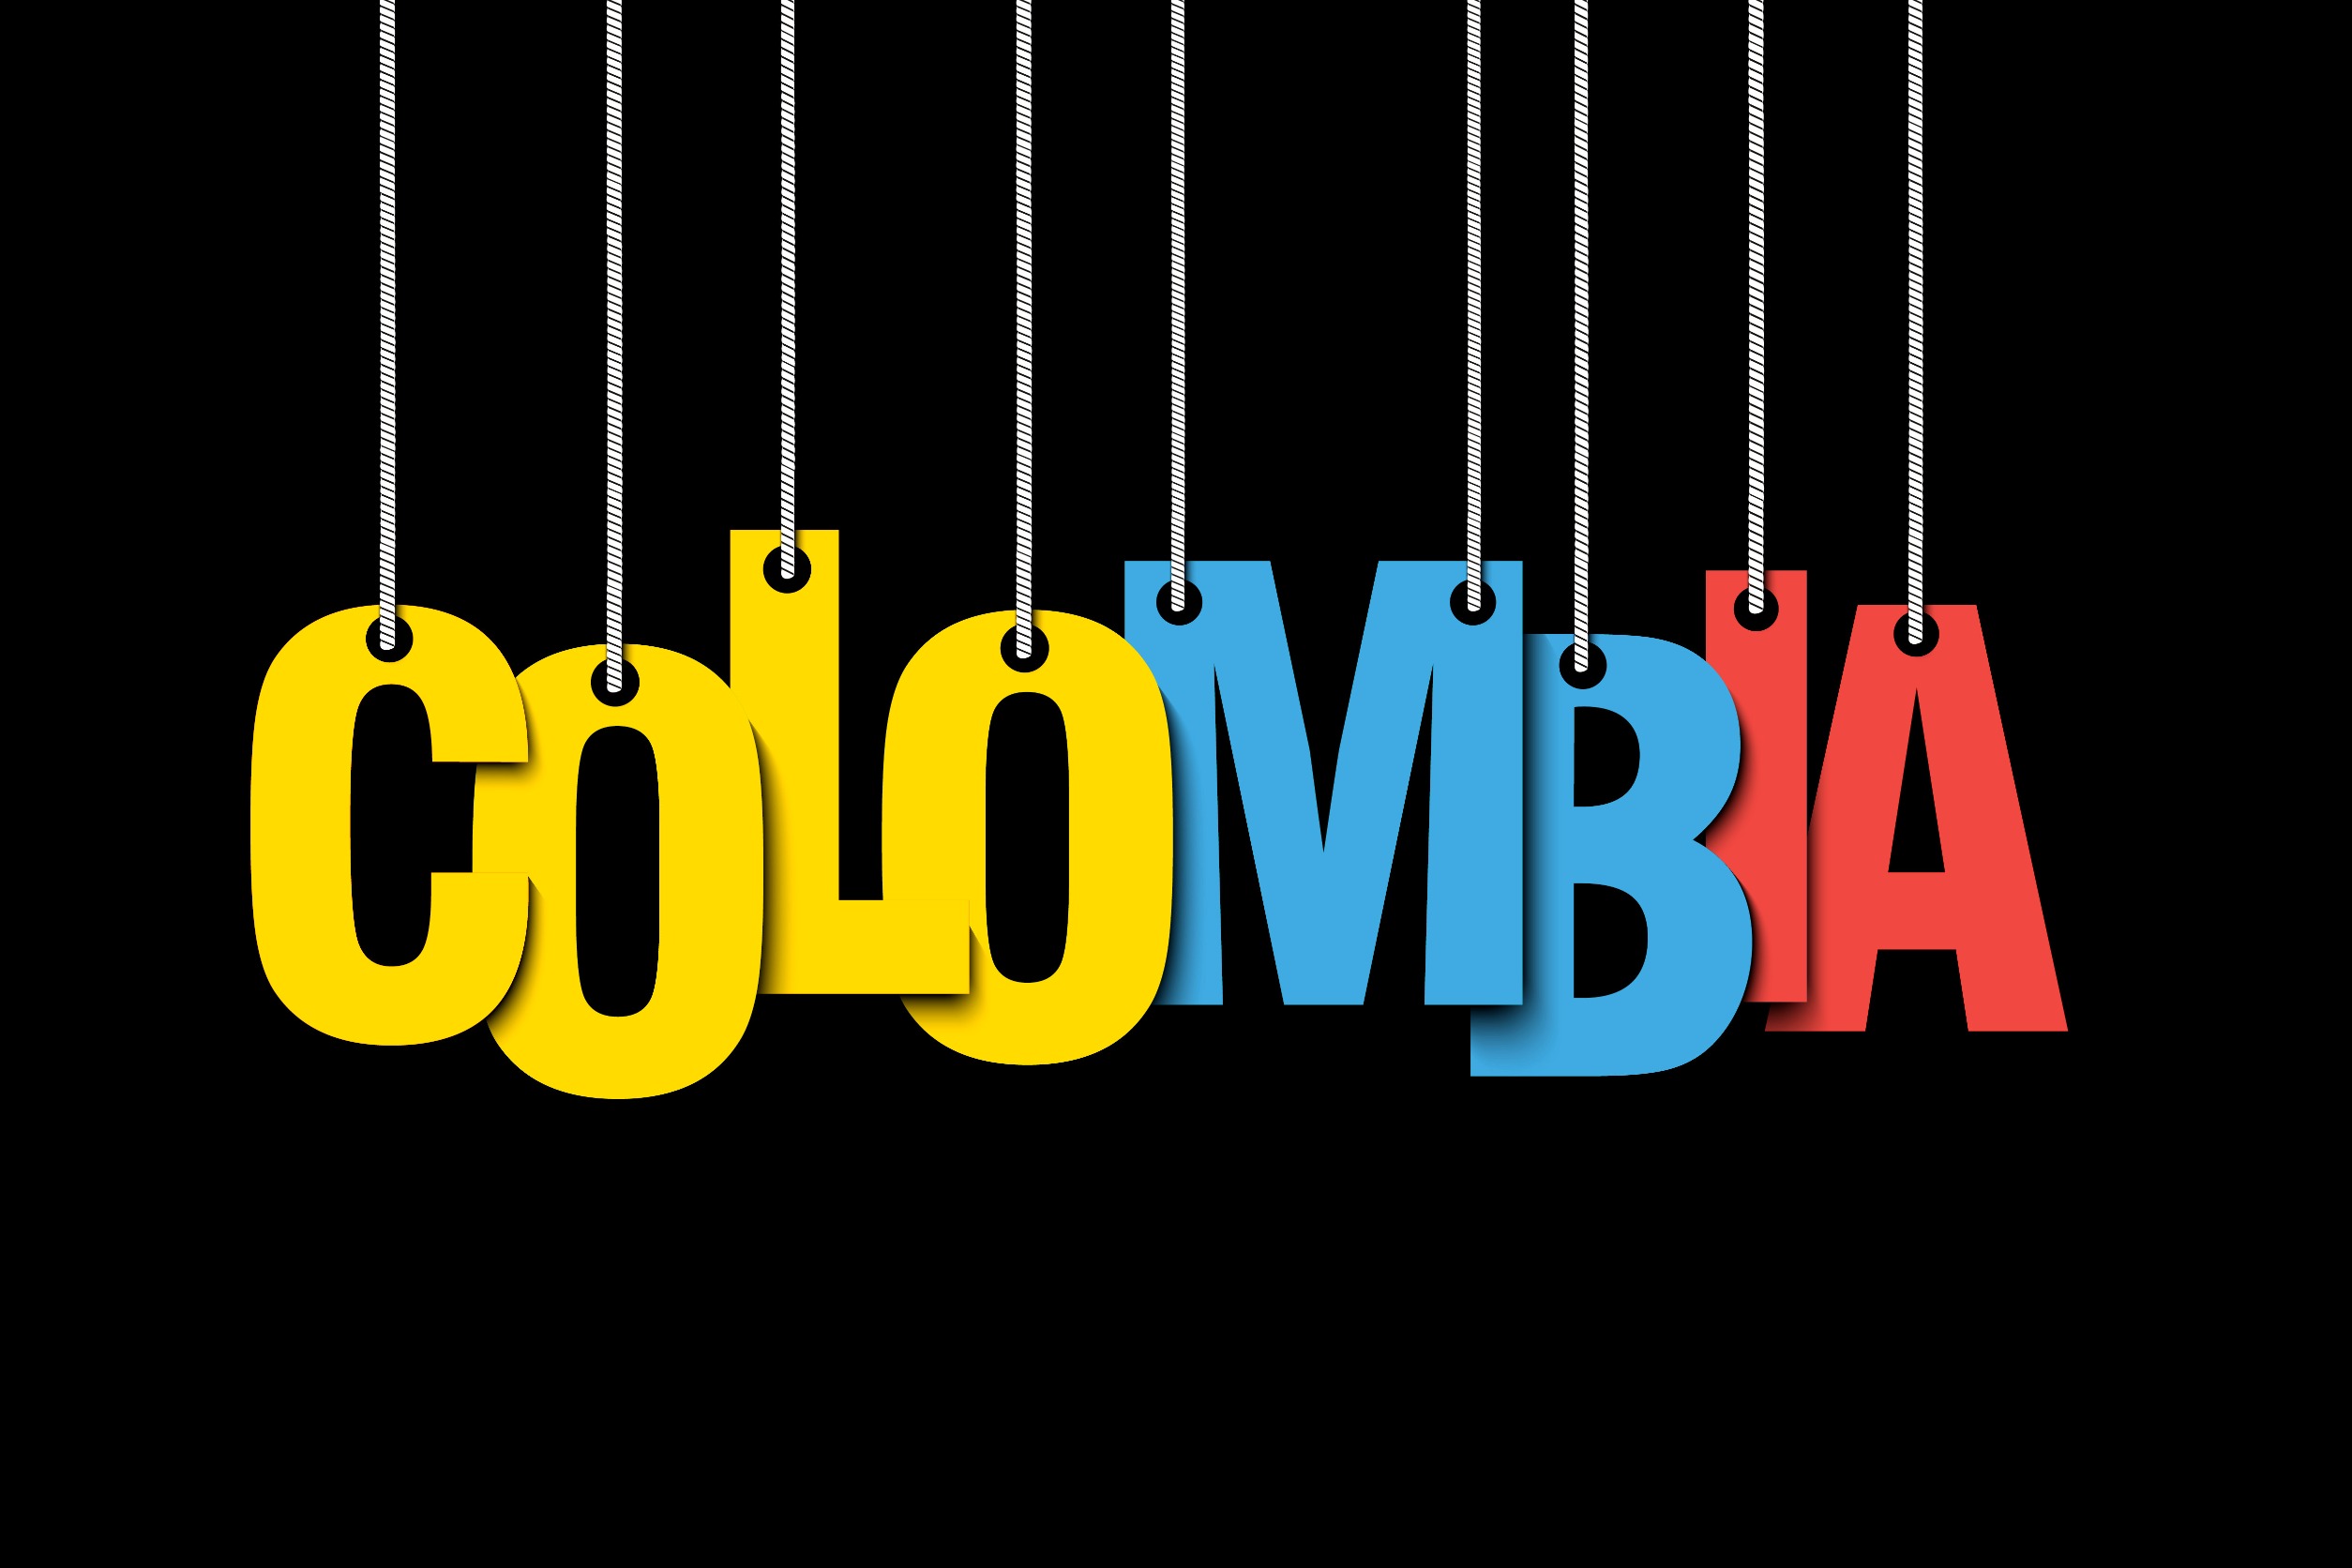 le mot colombia sur fond noir